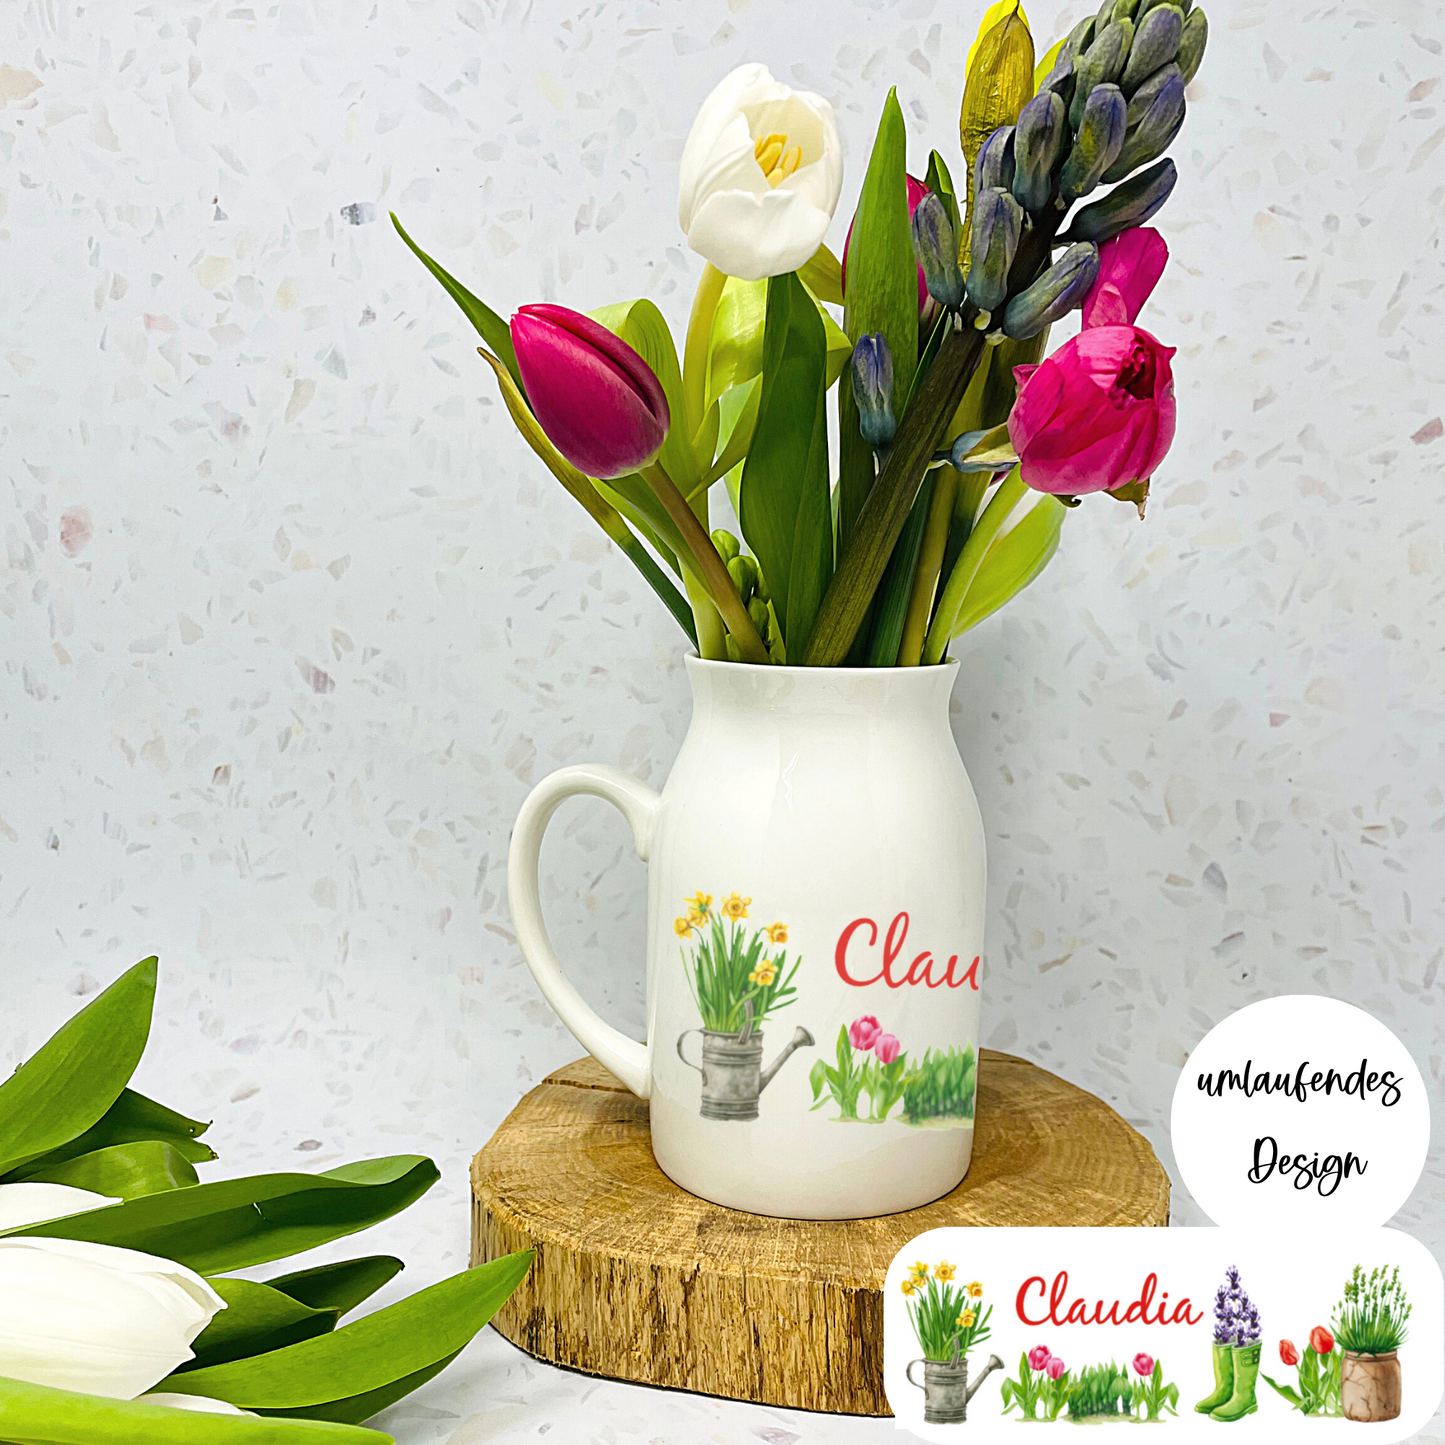 Tolle Blumenvase im Landhaus Design - mit Namen personalisiert - Geschenk Muttertag – Geschenk Geburtstag